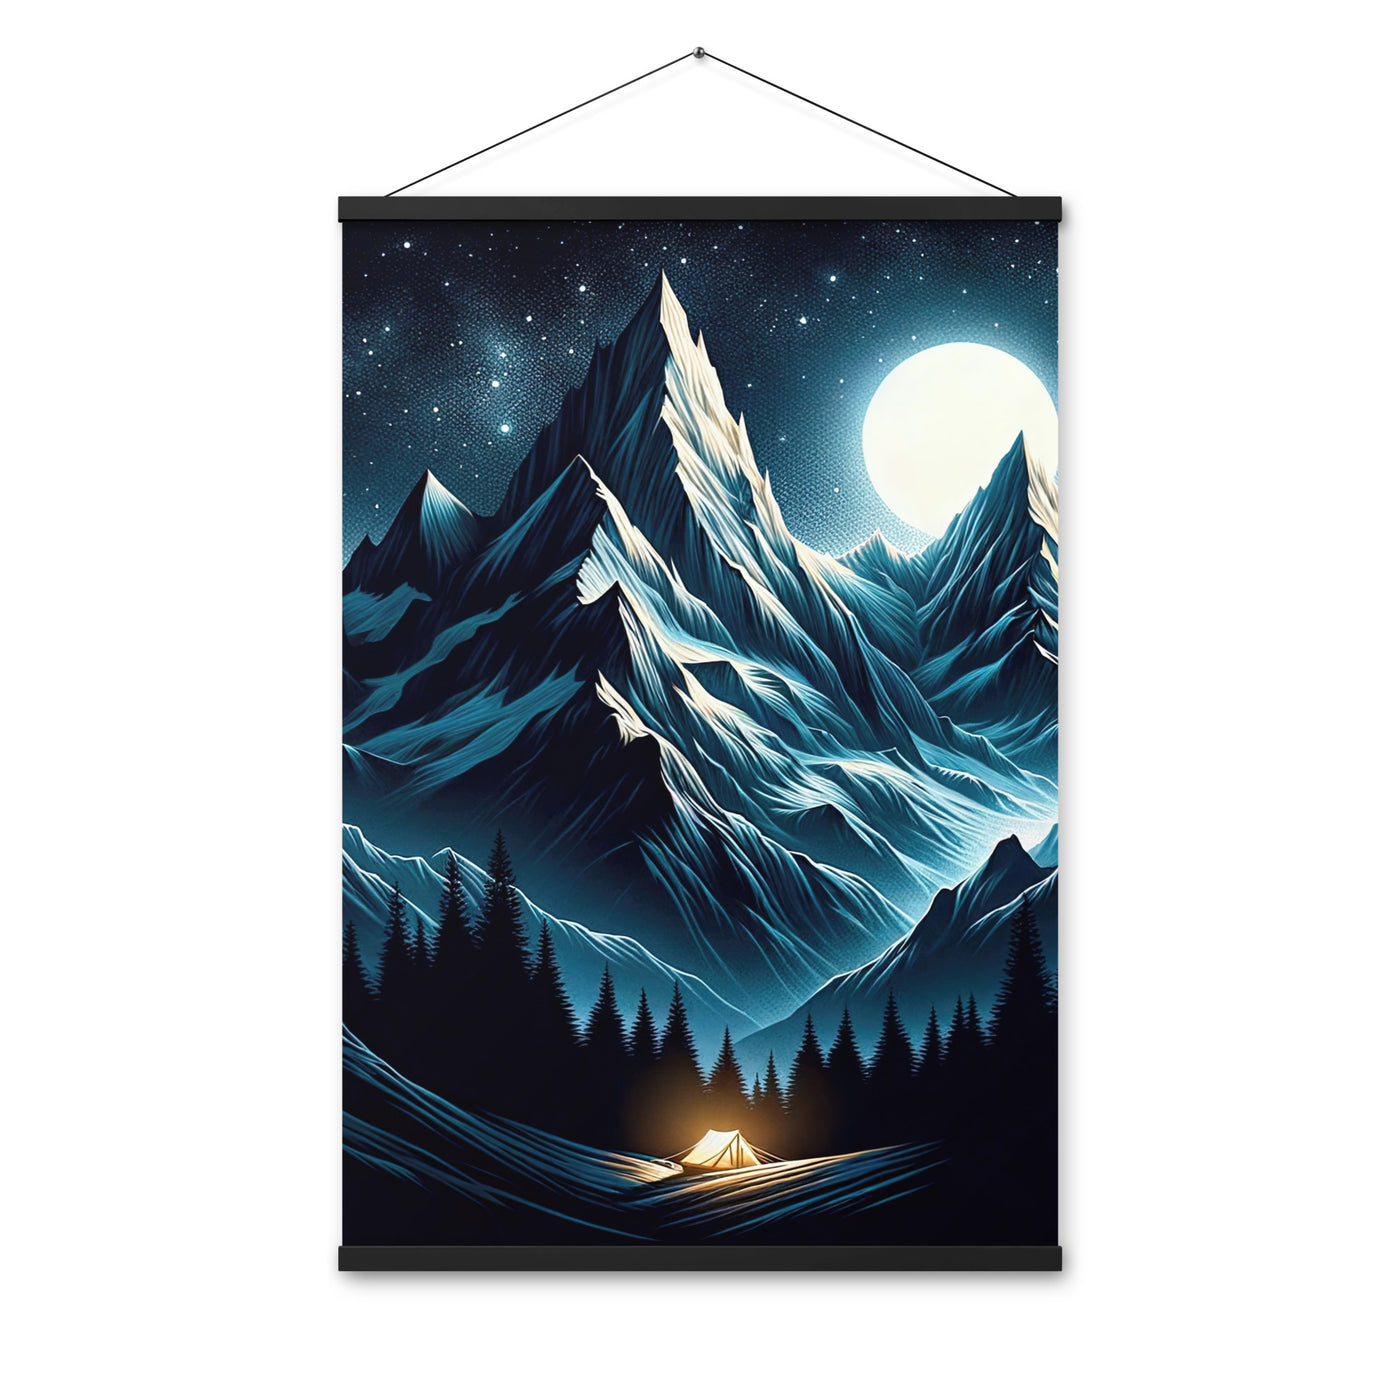 Alpennacht mit Zelt: Mondglanz auf Gipfeln und Tälern, sternenklarer Himmel - Premium Poster mit Aufhängung berge xxx yyy zzz 61 x 91.4 cm